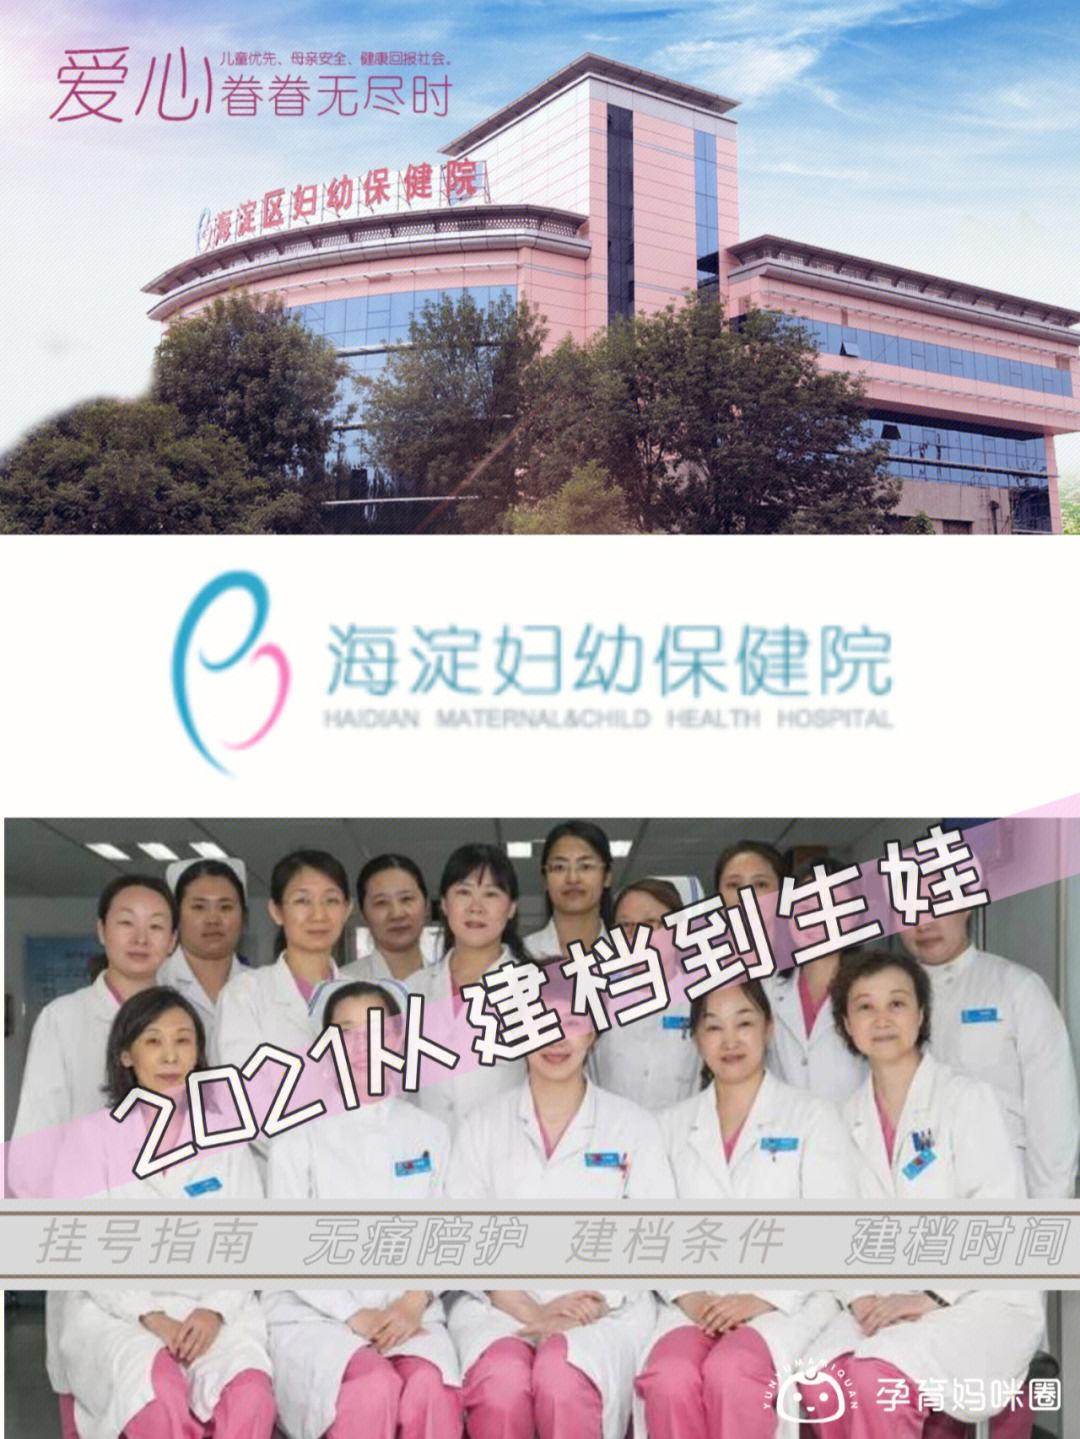 关于北京市海淀妇幼保健院专家跑腿预约挂号，提供一站式服务的信息